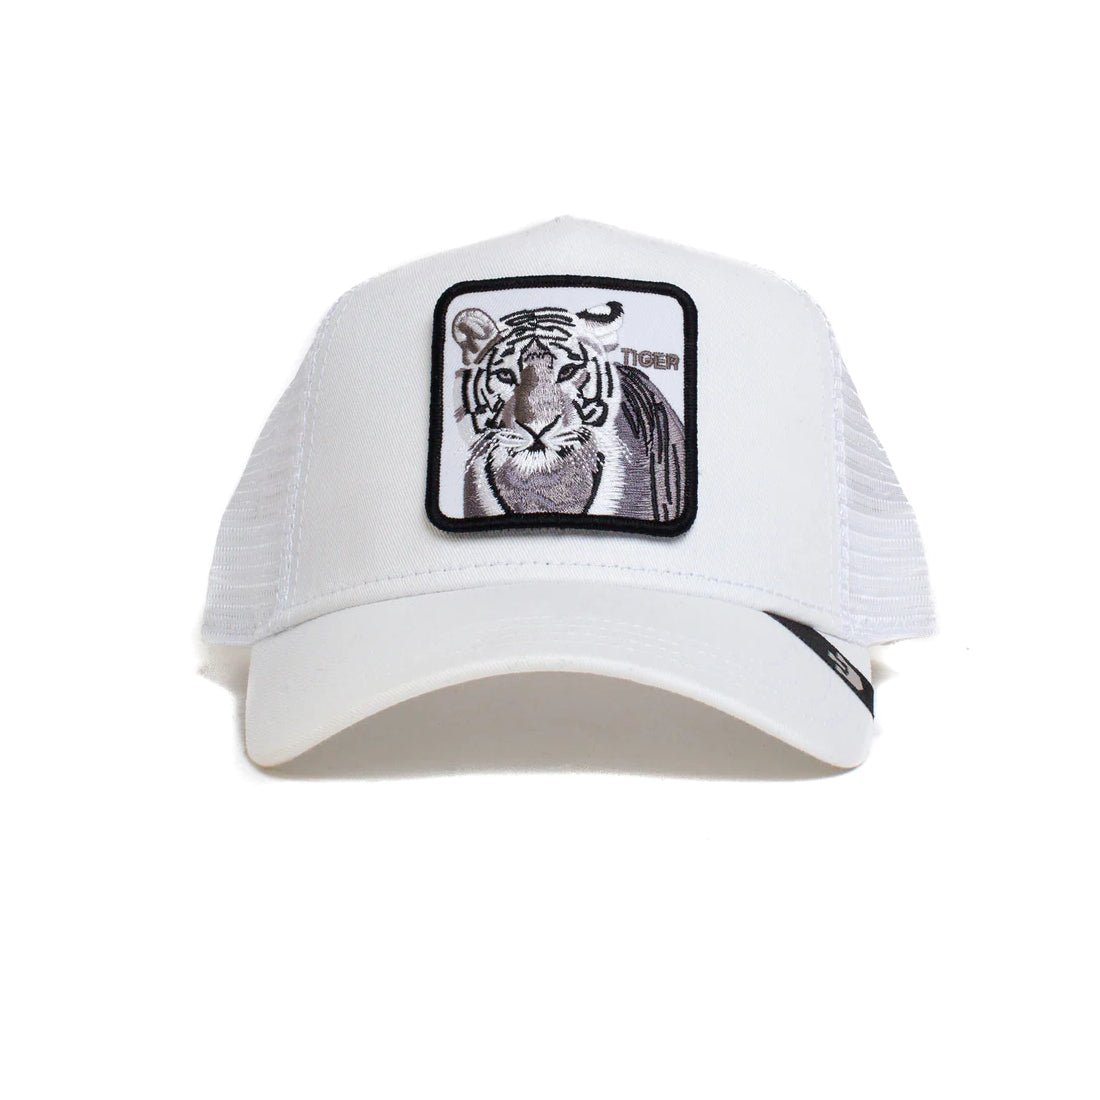 Queue Caps The White Tiger Cap - White - قبعة - Store 974 | ستور ٩٧٤